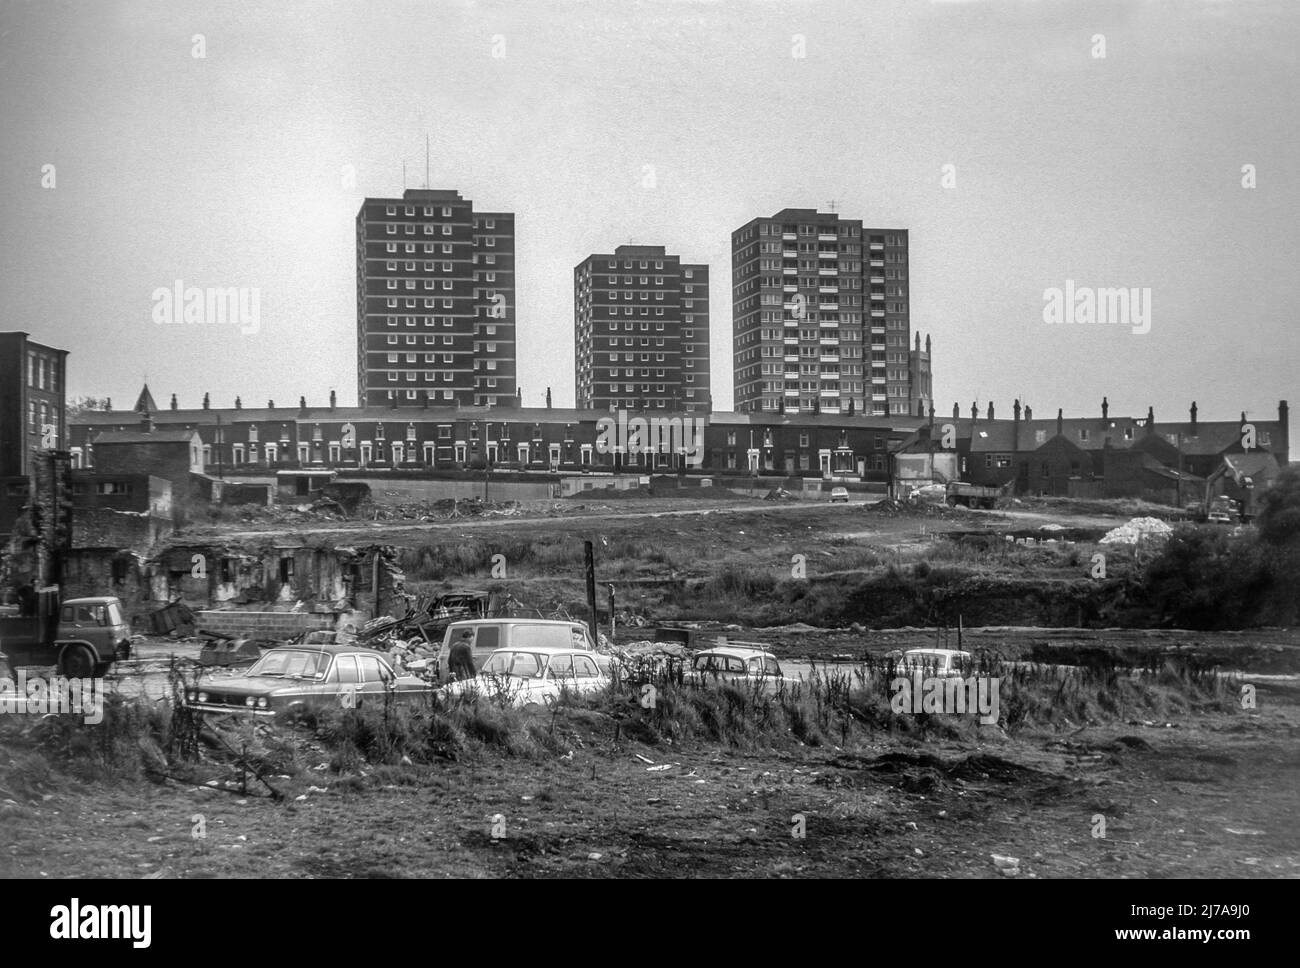 1975 Schwarz-Weiß-Archivbild des Reentwicklungsgebiets der Primrose Bank in Blackburn, Lancashire. Turmblöcke hinter Reihenhäusern wurden Ende 1960s erbaut und wurden seitdem teilweise abgerissen und teilweise renoviert. Stockfoto